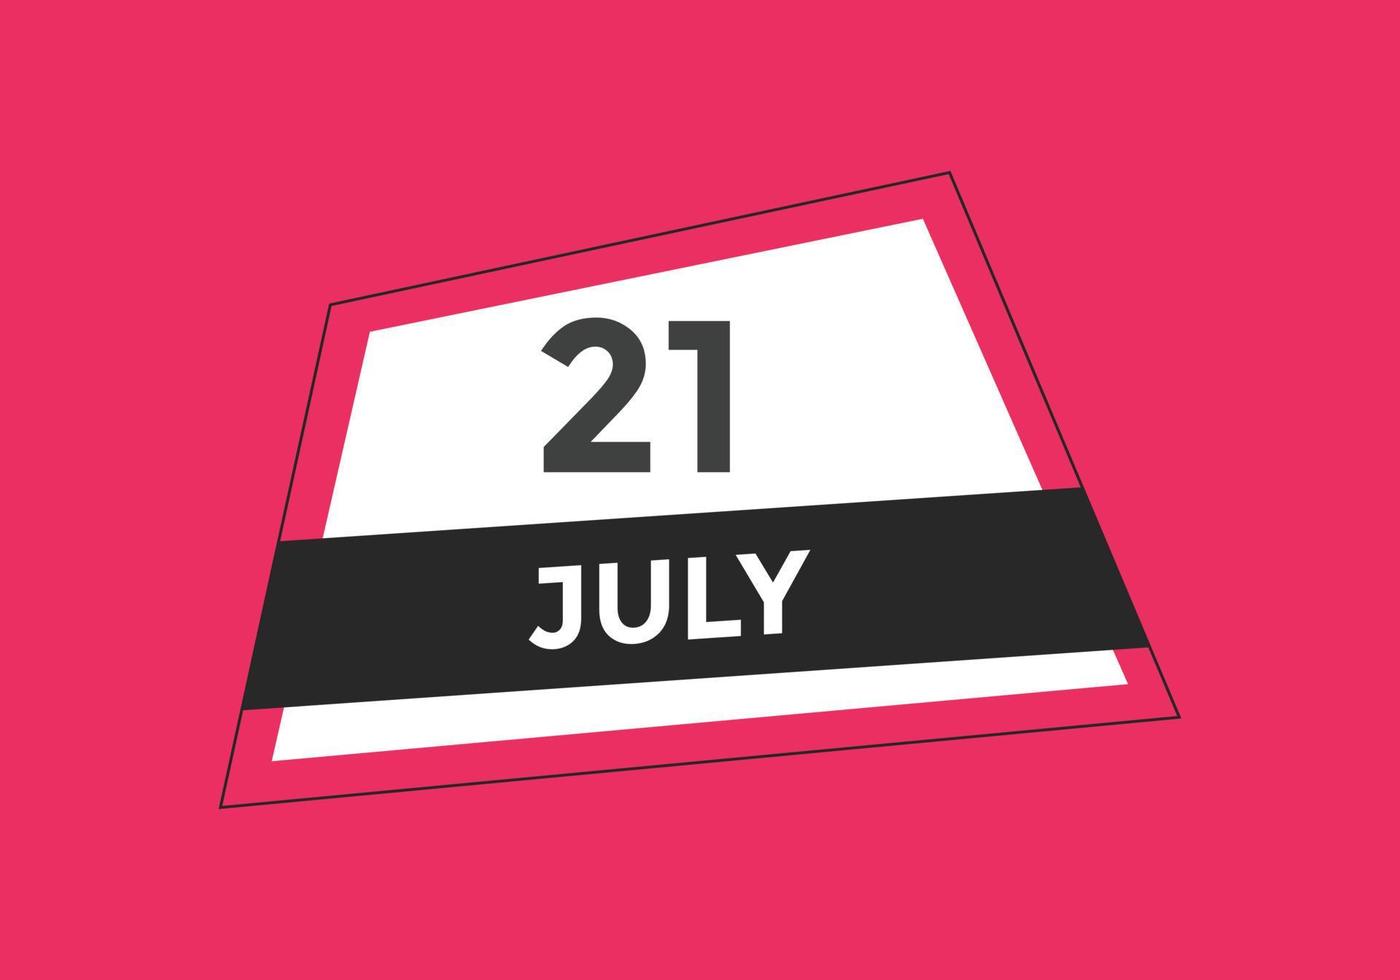 juli 21 kalender herinnering. 21e juli dagelijks kalender icoon sjabloon. kalender 21e juli icoon ontwerp sjabloon. vector illustratie